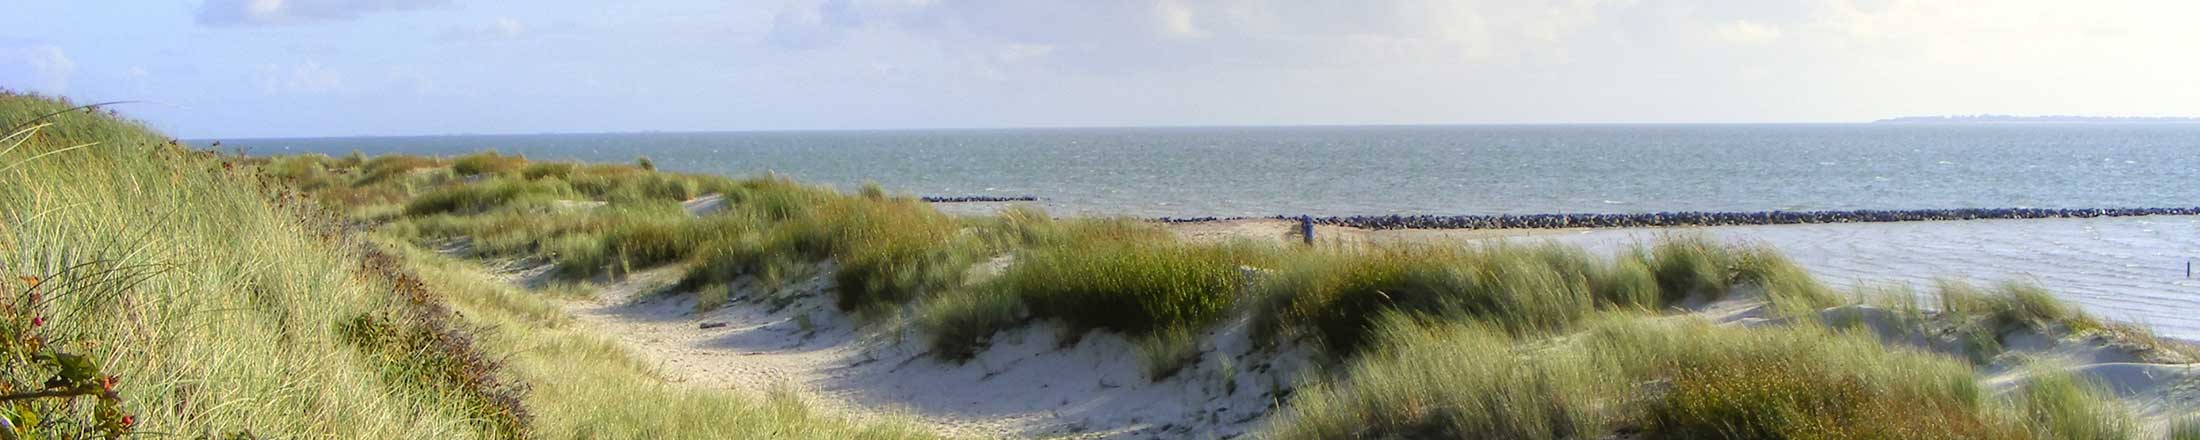 Strand an der Küste von Sylt